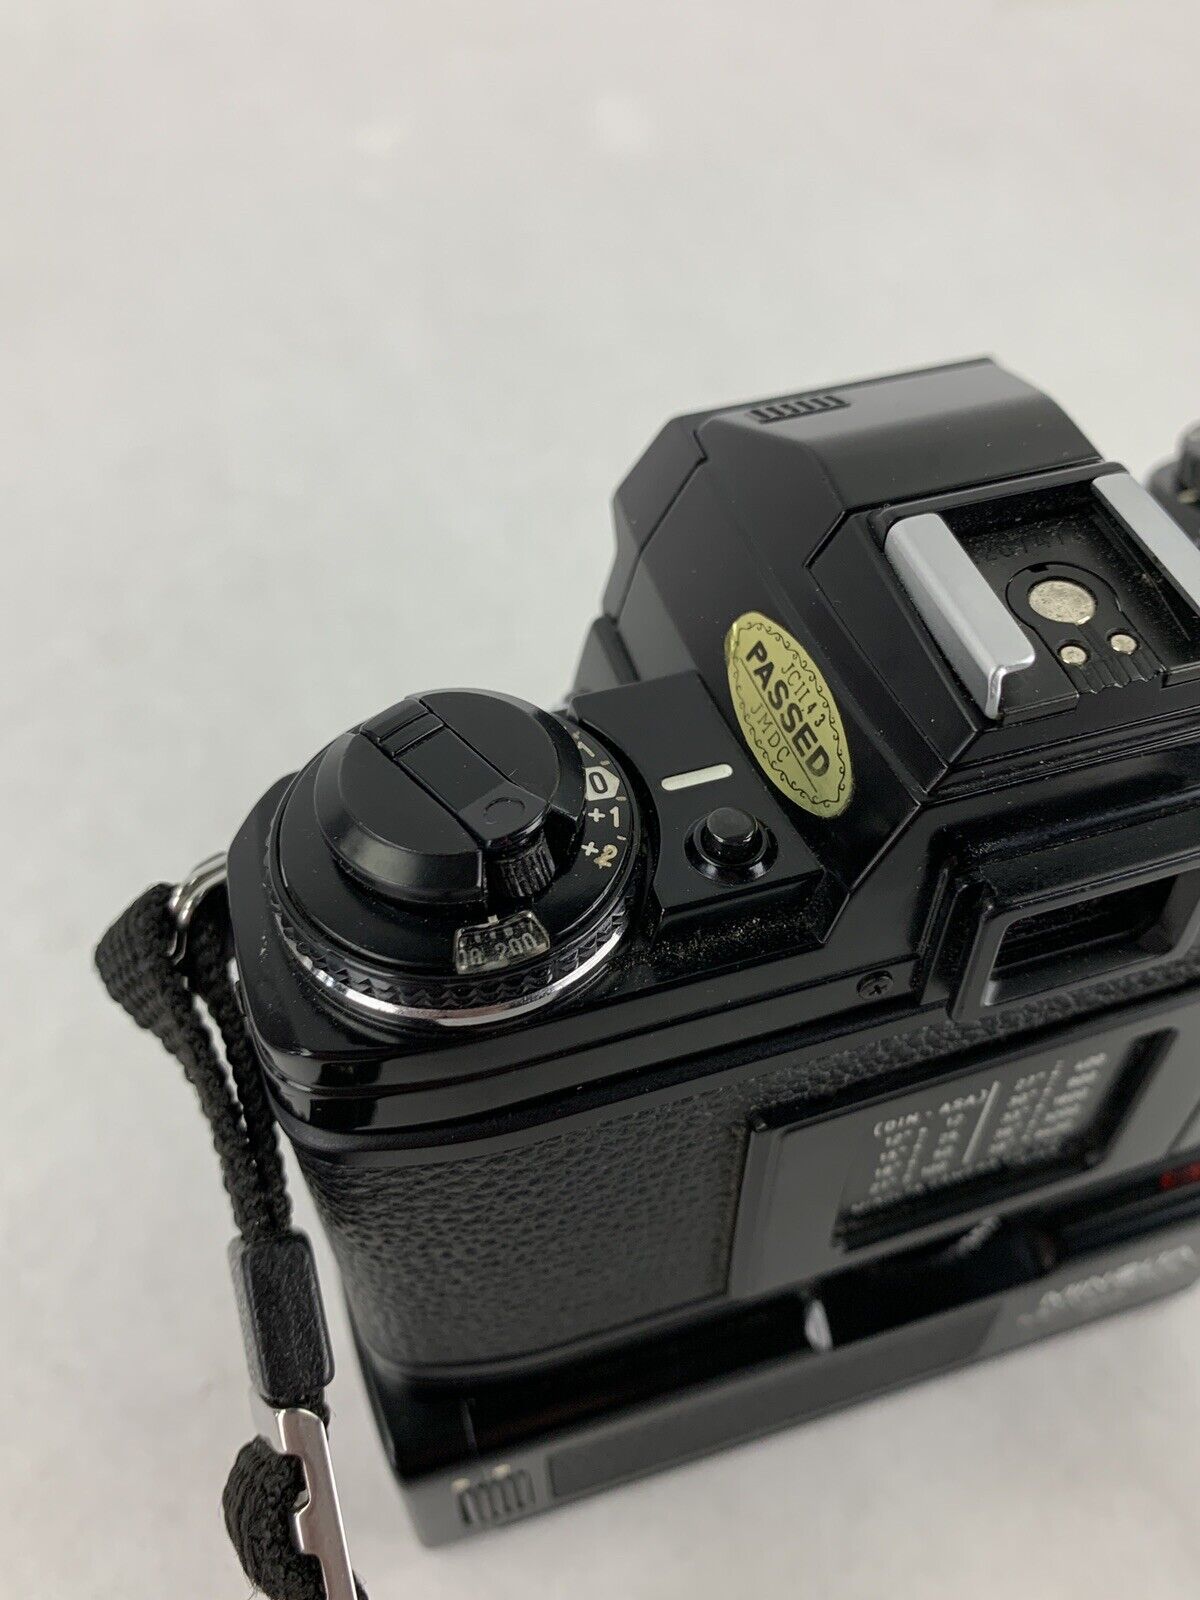 Minolta X-700 35mm SLR Film Camera w/ 70-210mm Lens Bad Mode Selector For Parts